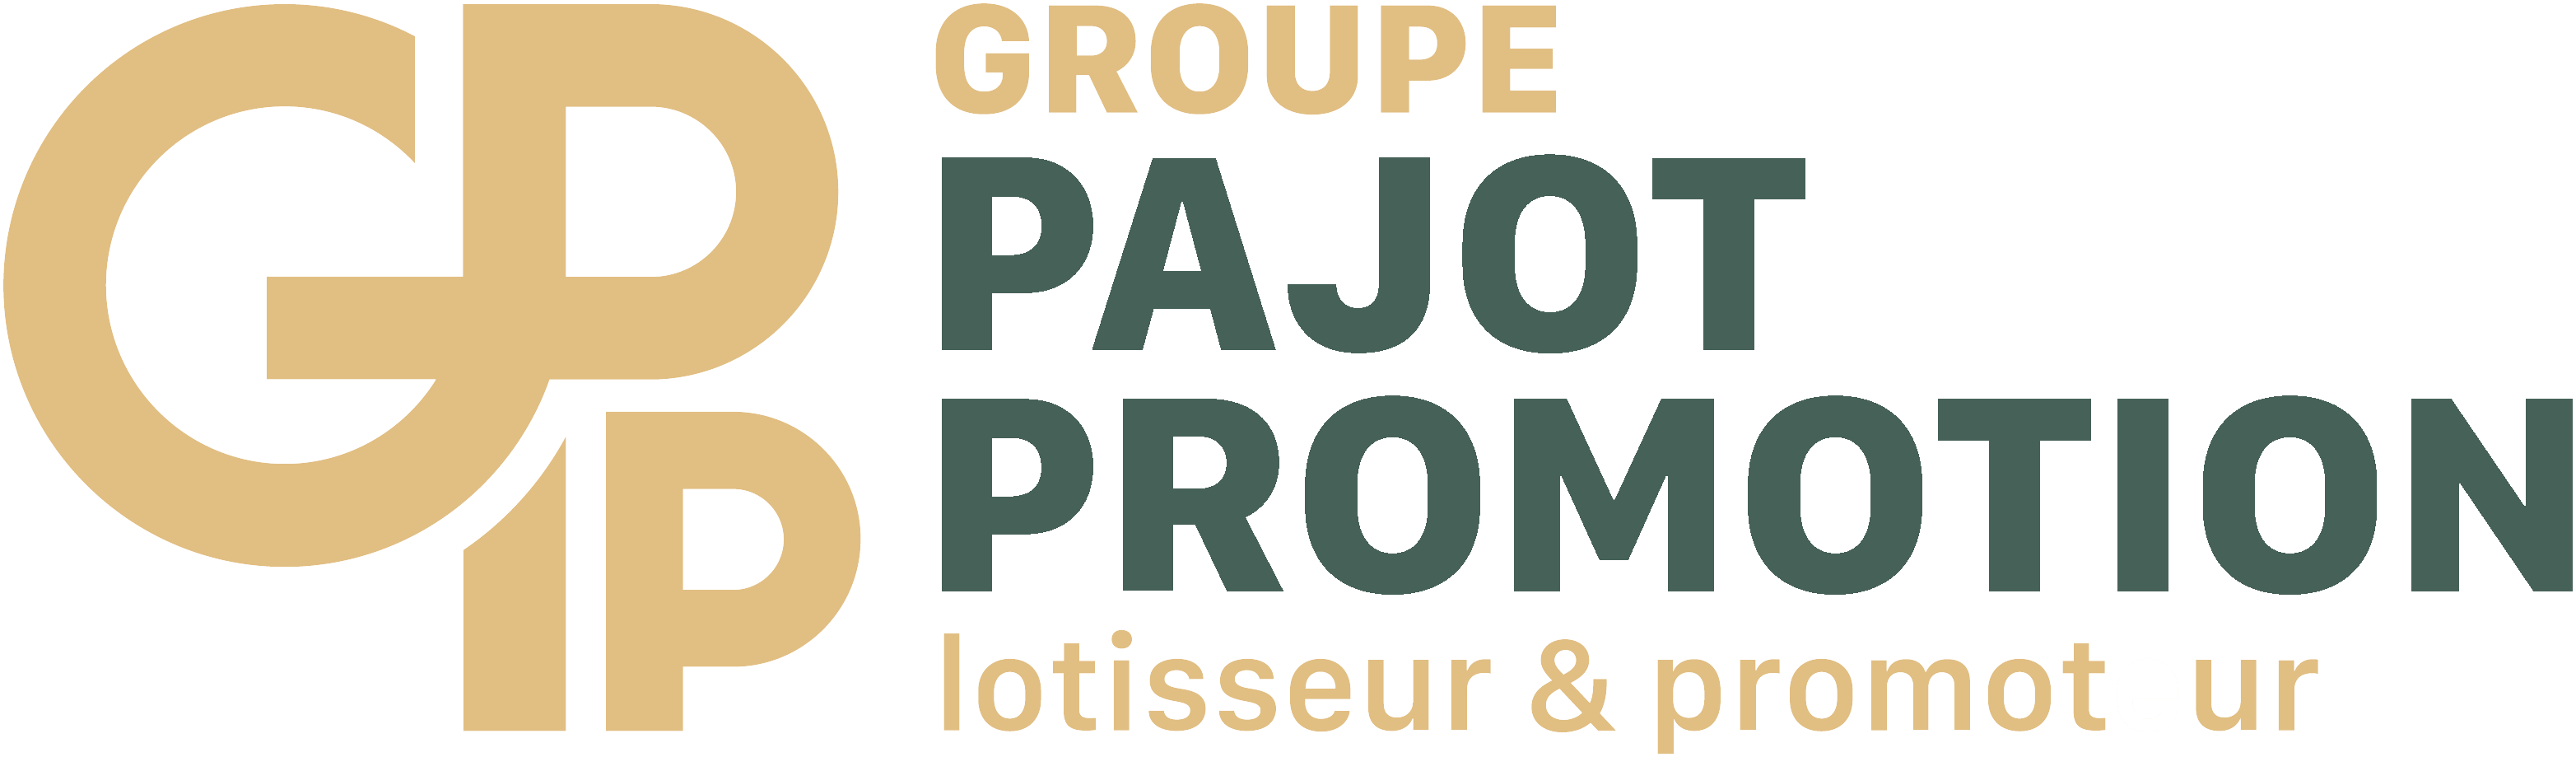 Pajot Promotion - Les Iris - 1ER